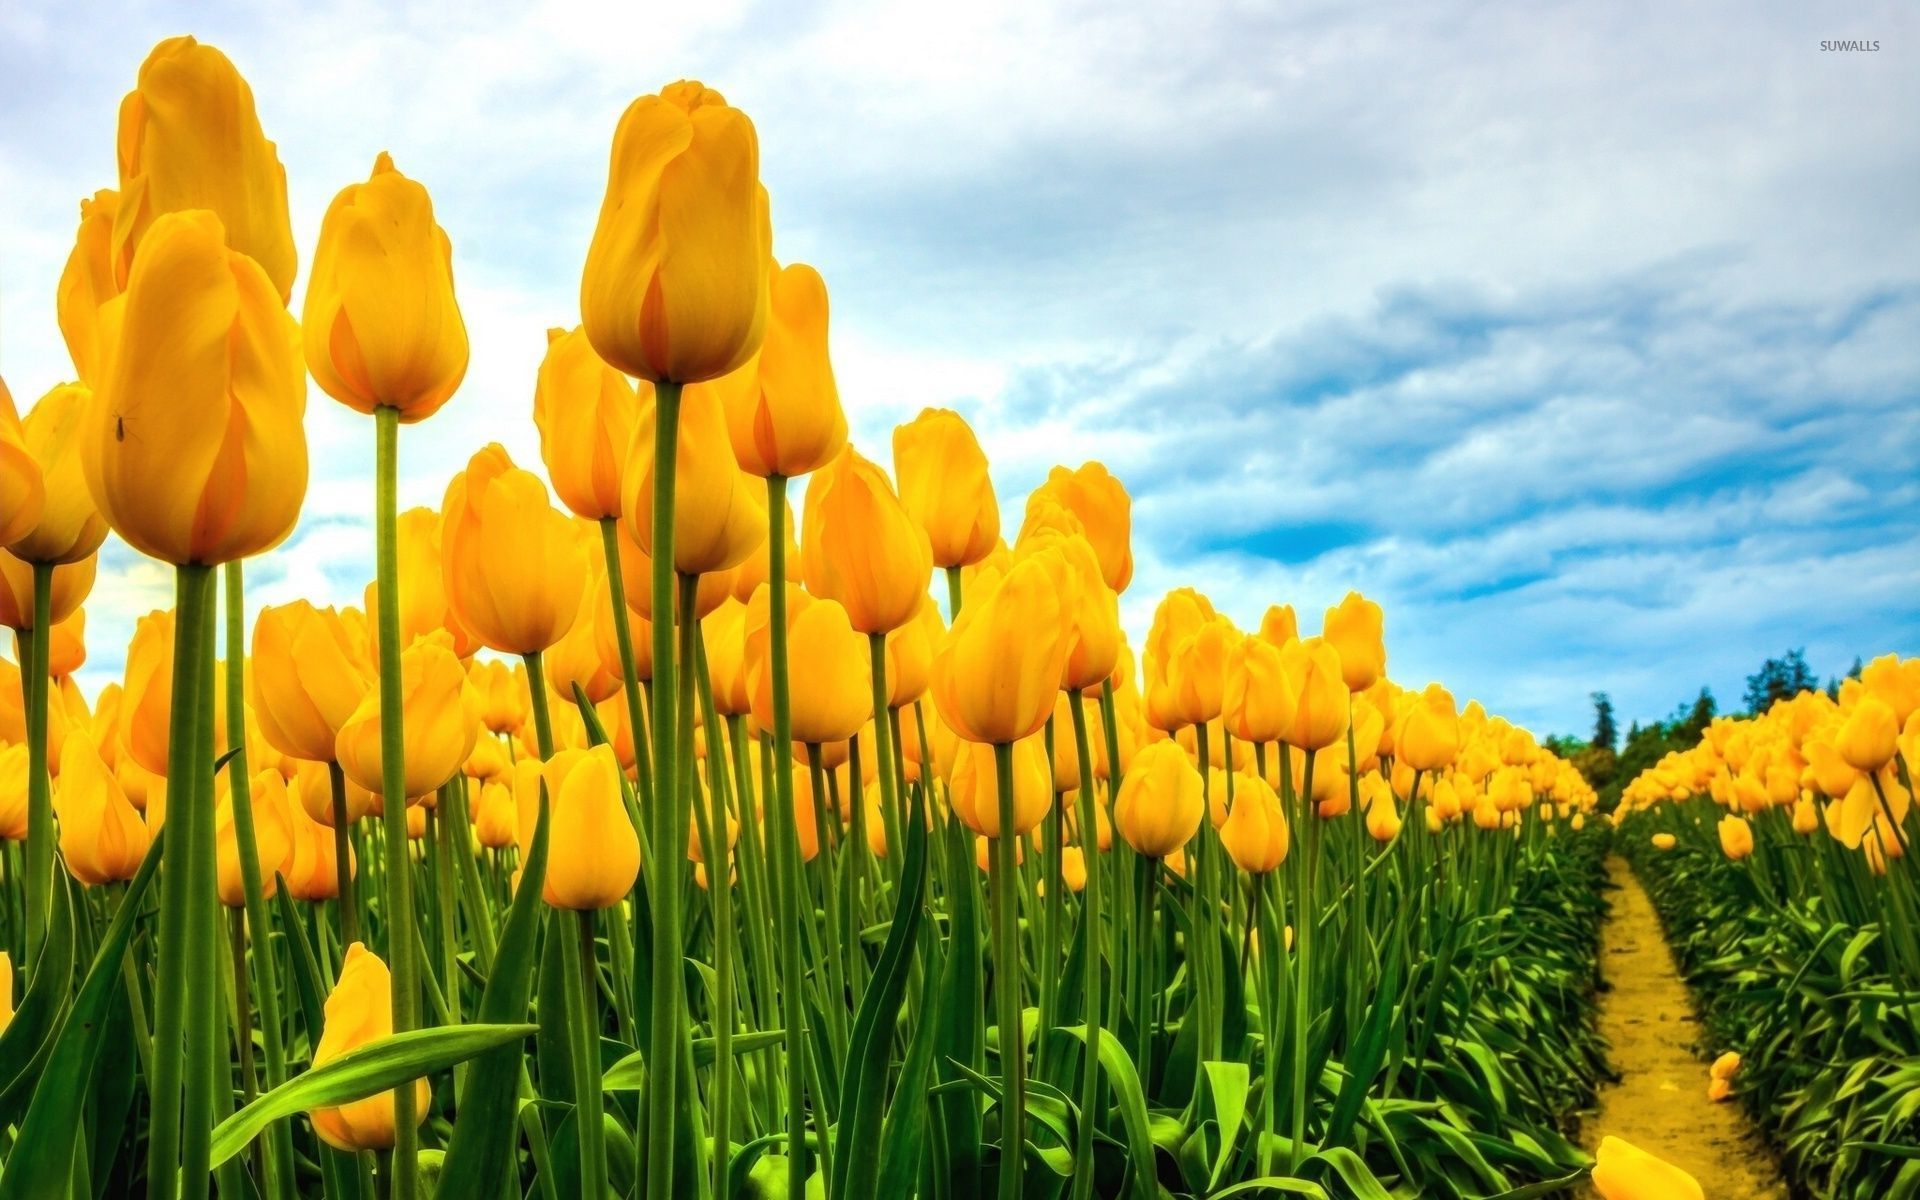 Yellow tulip photo